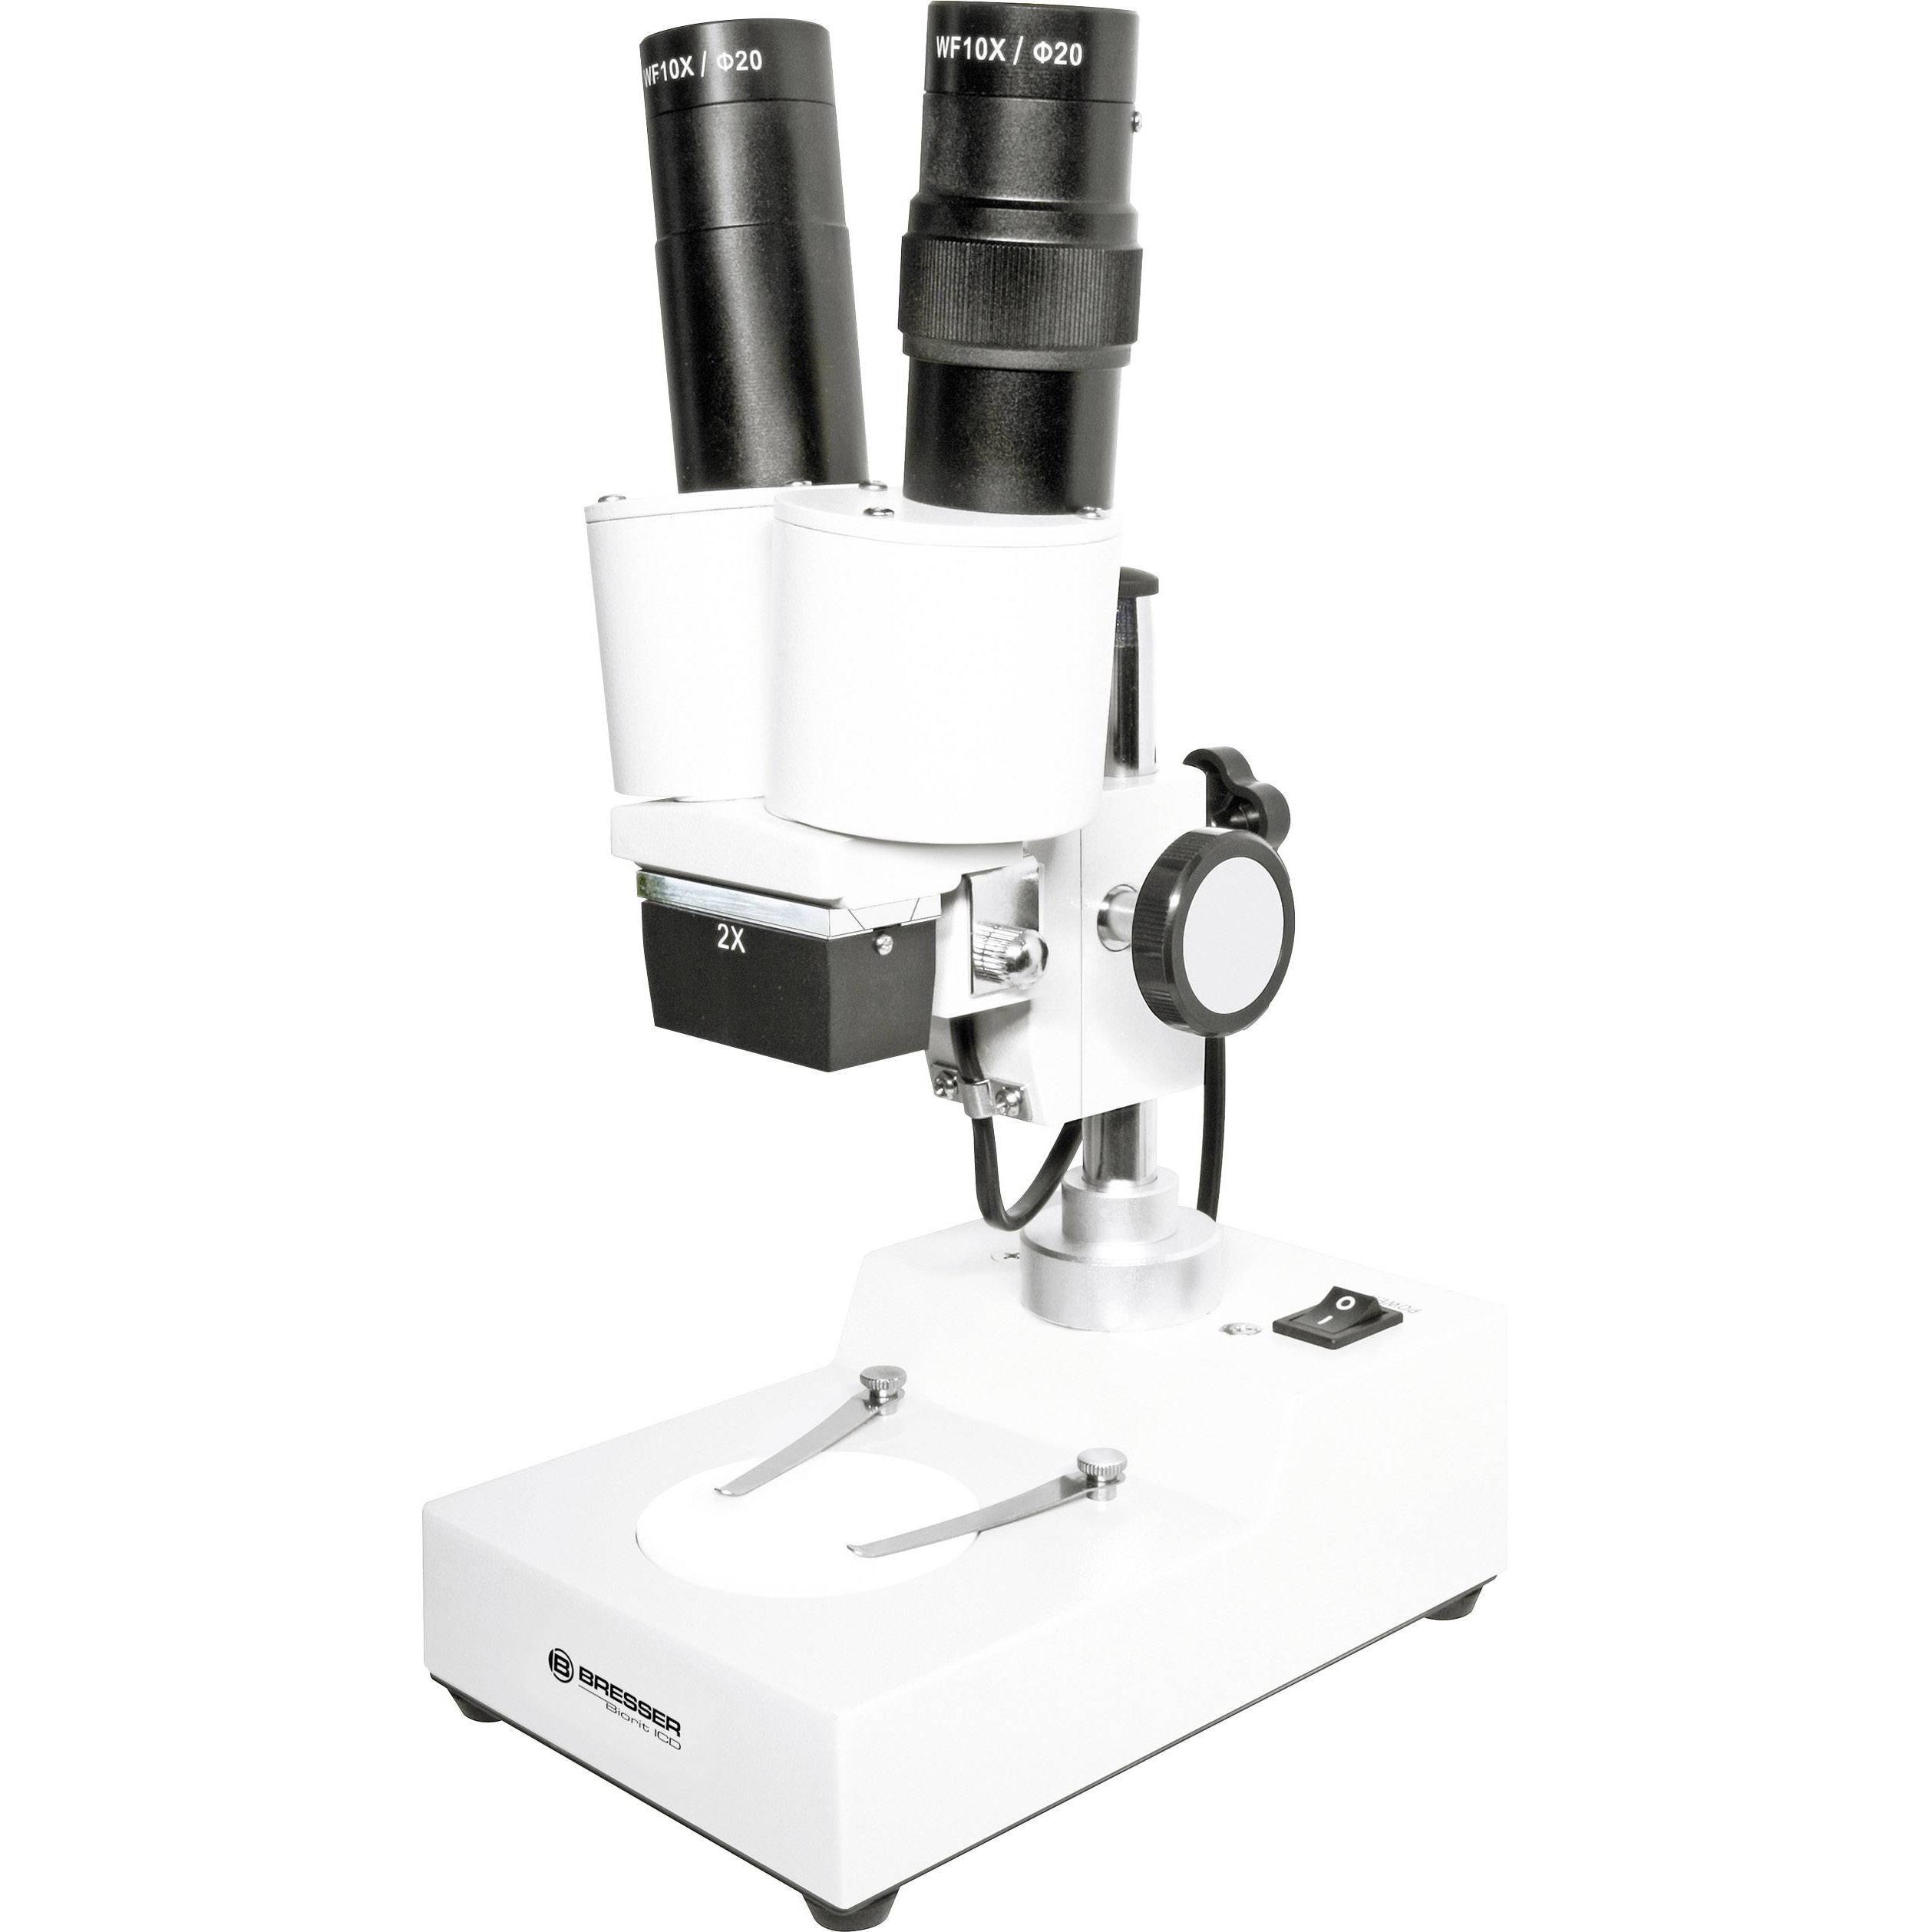 1 прибор типа микроскопа. Микроскоп Bresser Advance ICD. Микроскоп Bresser Biolux ICD stereo 20x. Микроскоп Bresser Advance ICD 10x 160x камера цифровая Levenhuk m800 Plus. : Микроскоп Bresser 58-07000 -1.